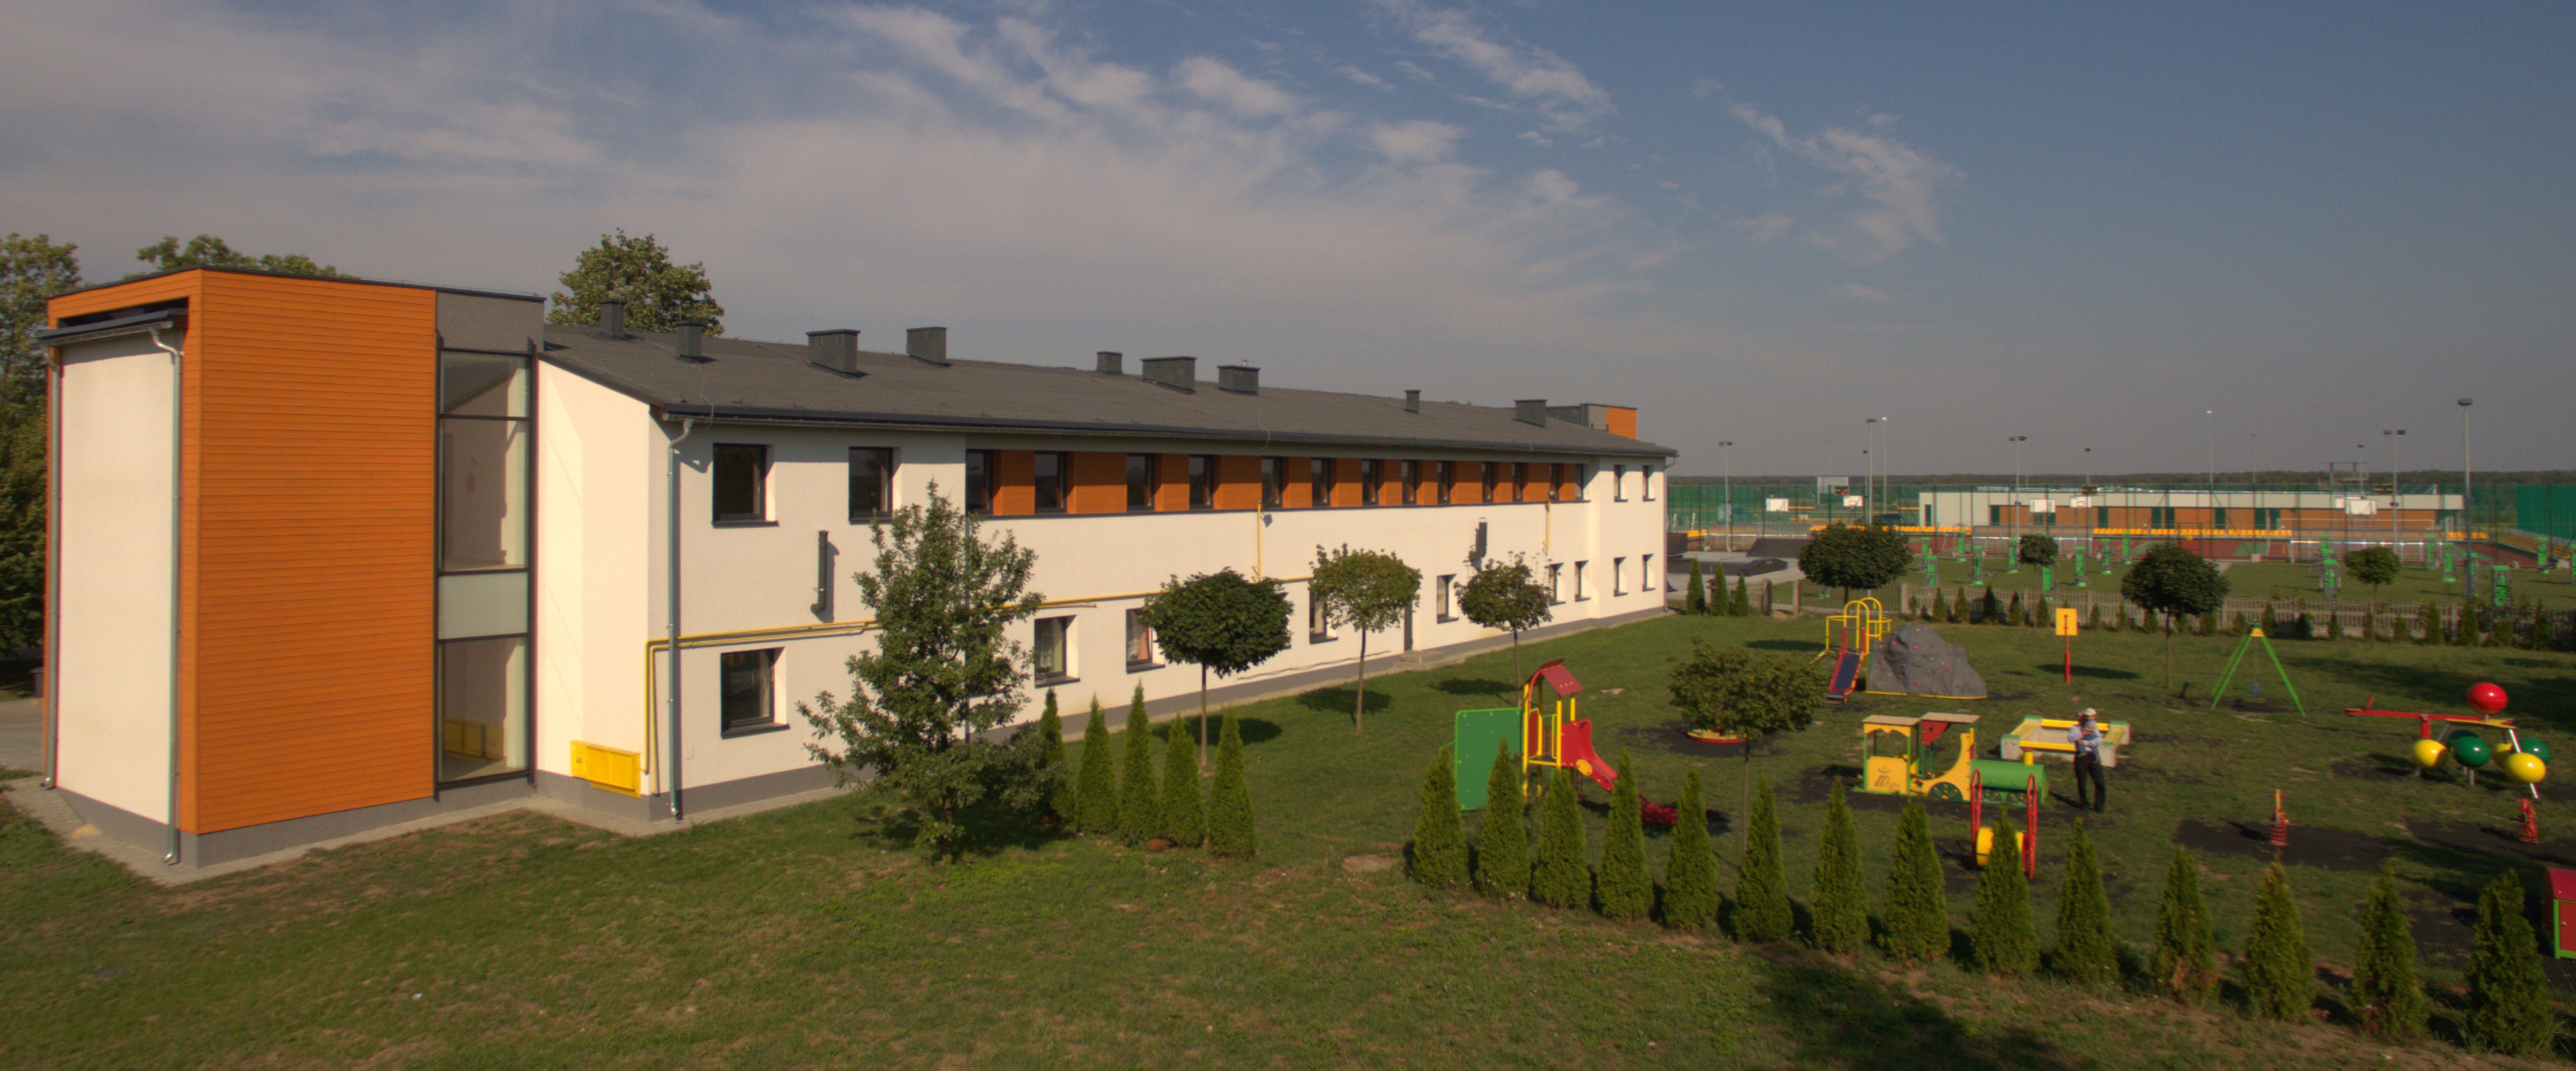 Przedszkole w Oarowicach